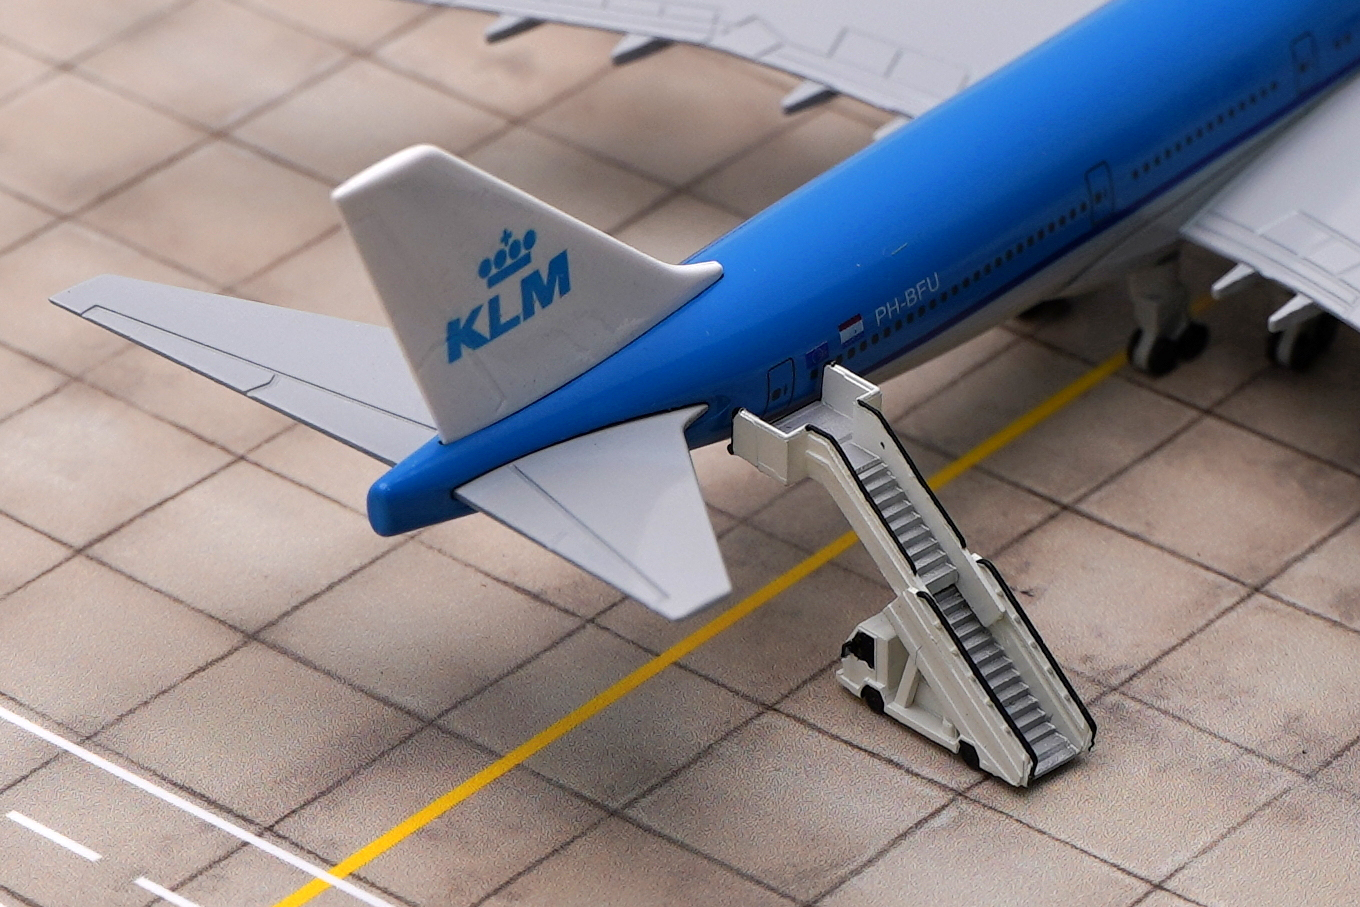    747 KLM,  , 20 ., . # 6 hobbyplus.ru